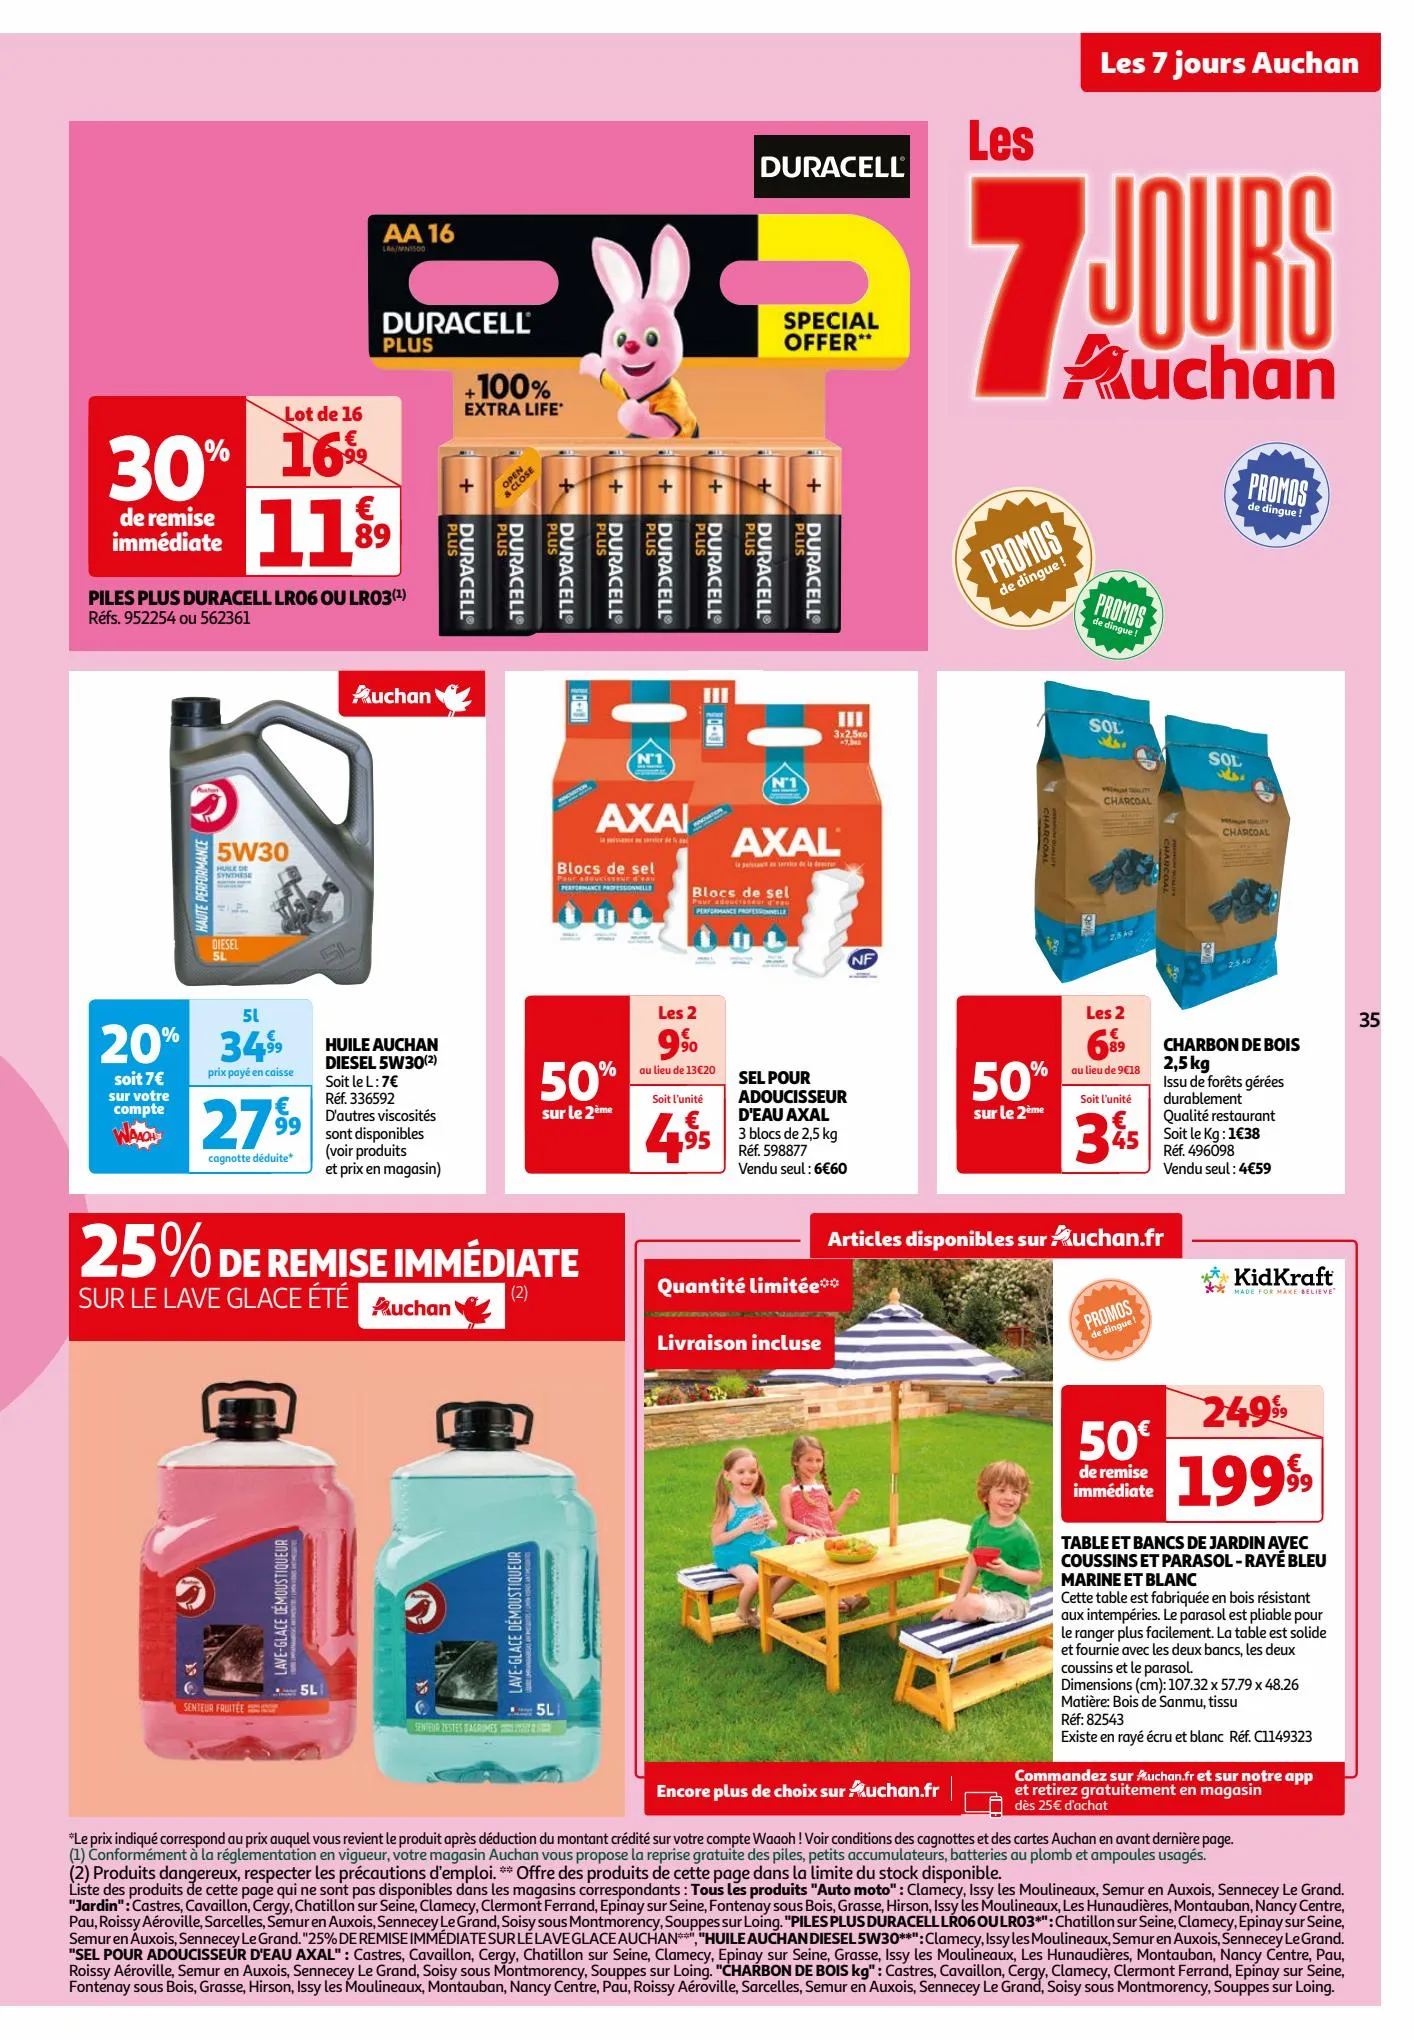 Catalogue Les 7 jours Auchan, page 00035